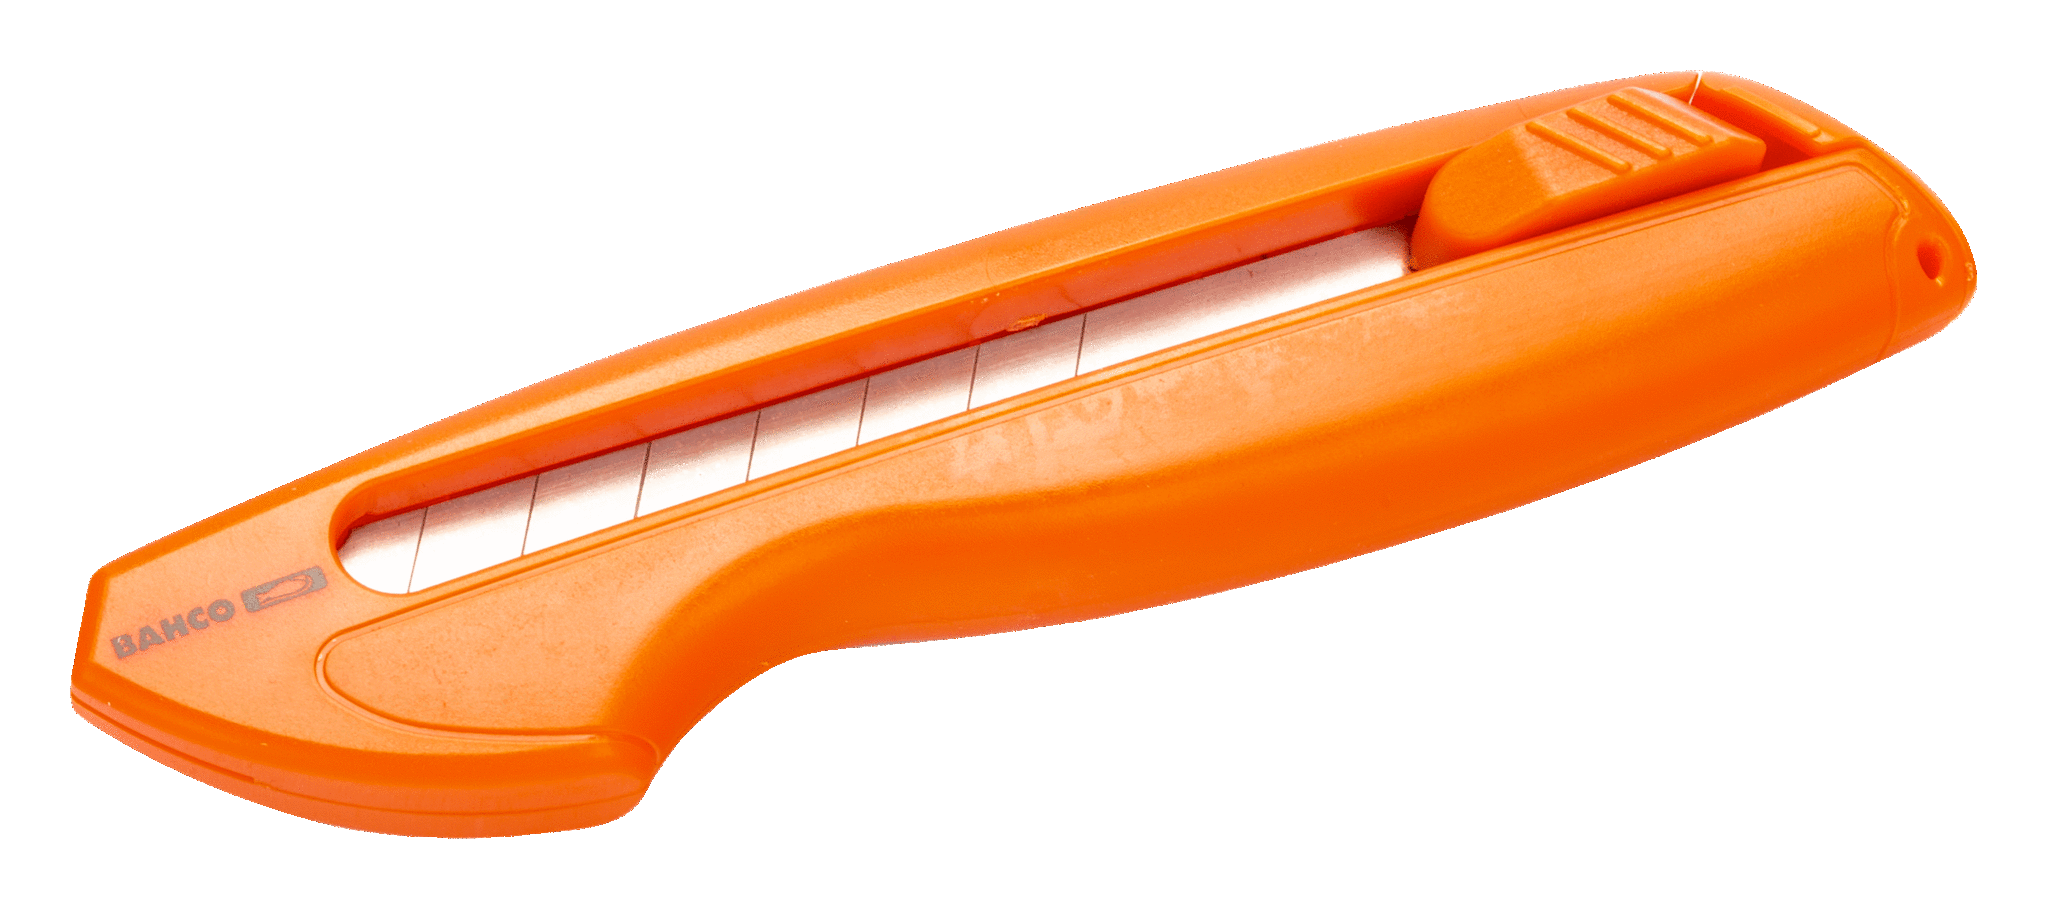 картинка Универсальный выдвижной нож с многосекционным лезвием BAHCO KG18-01 от магазина "Элит-инструмент"